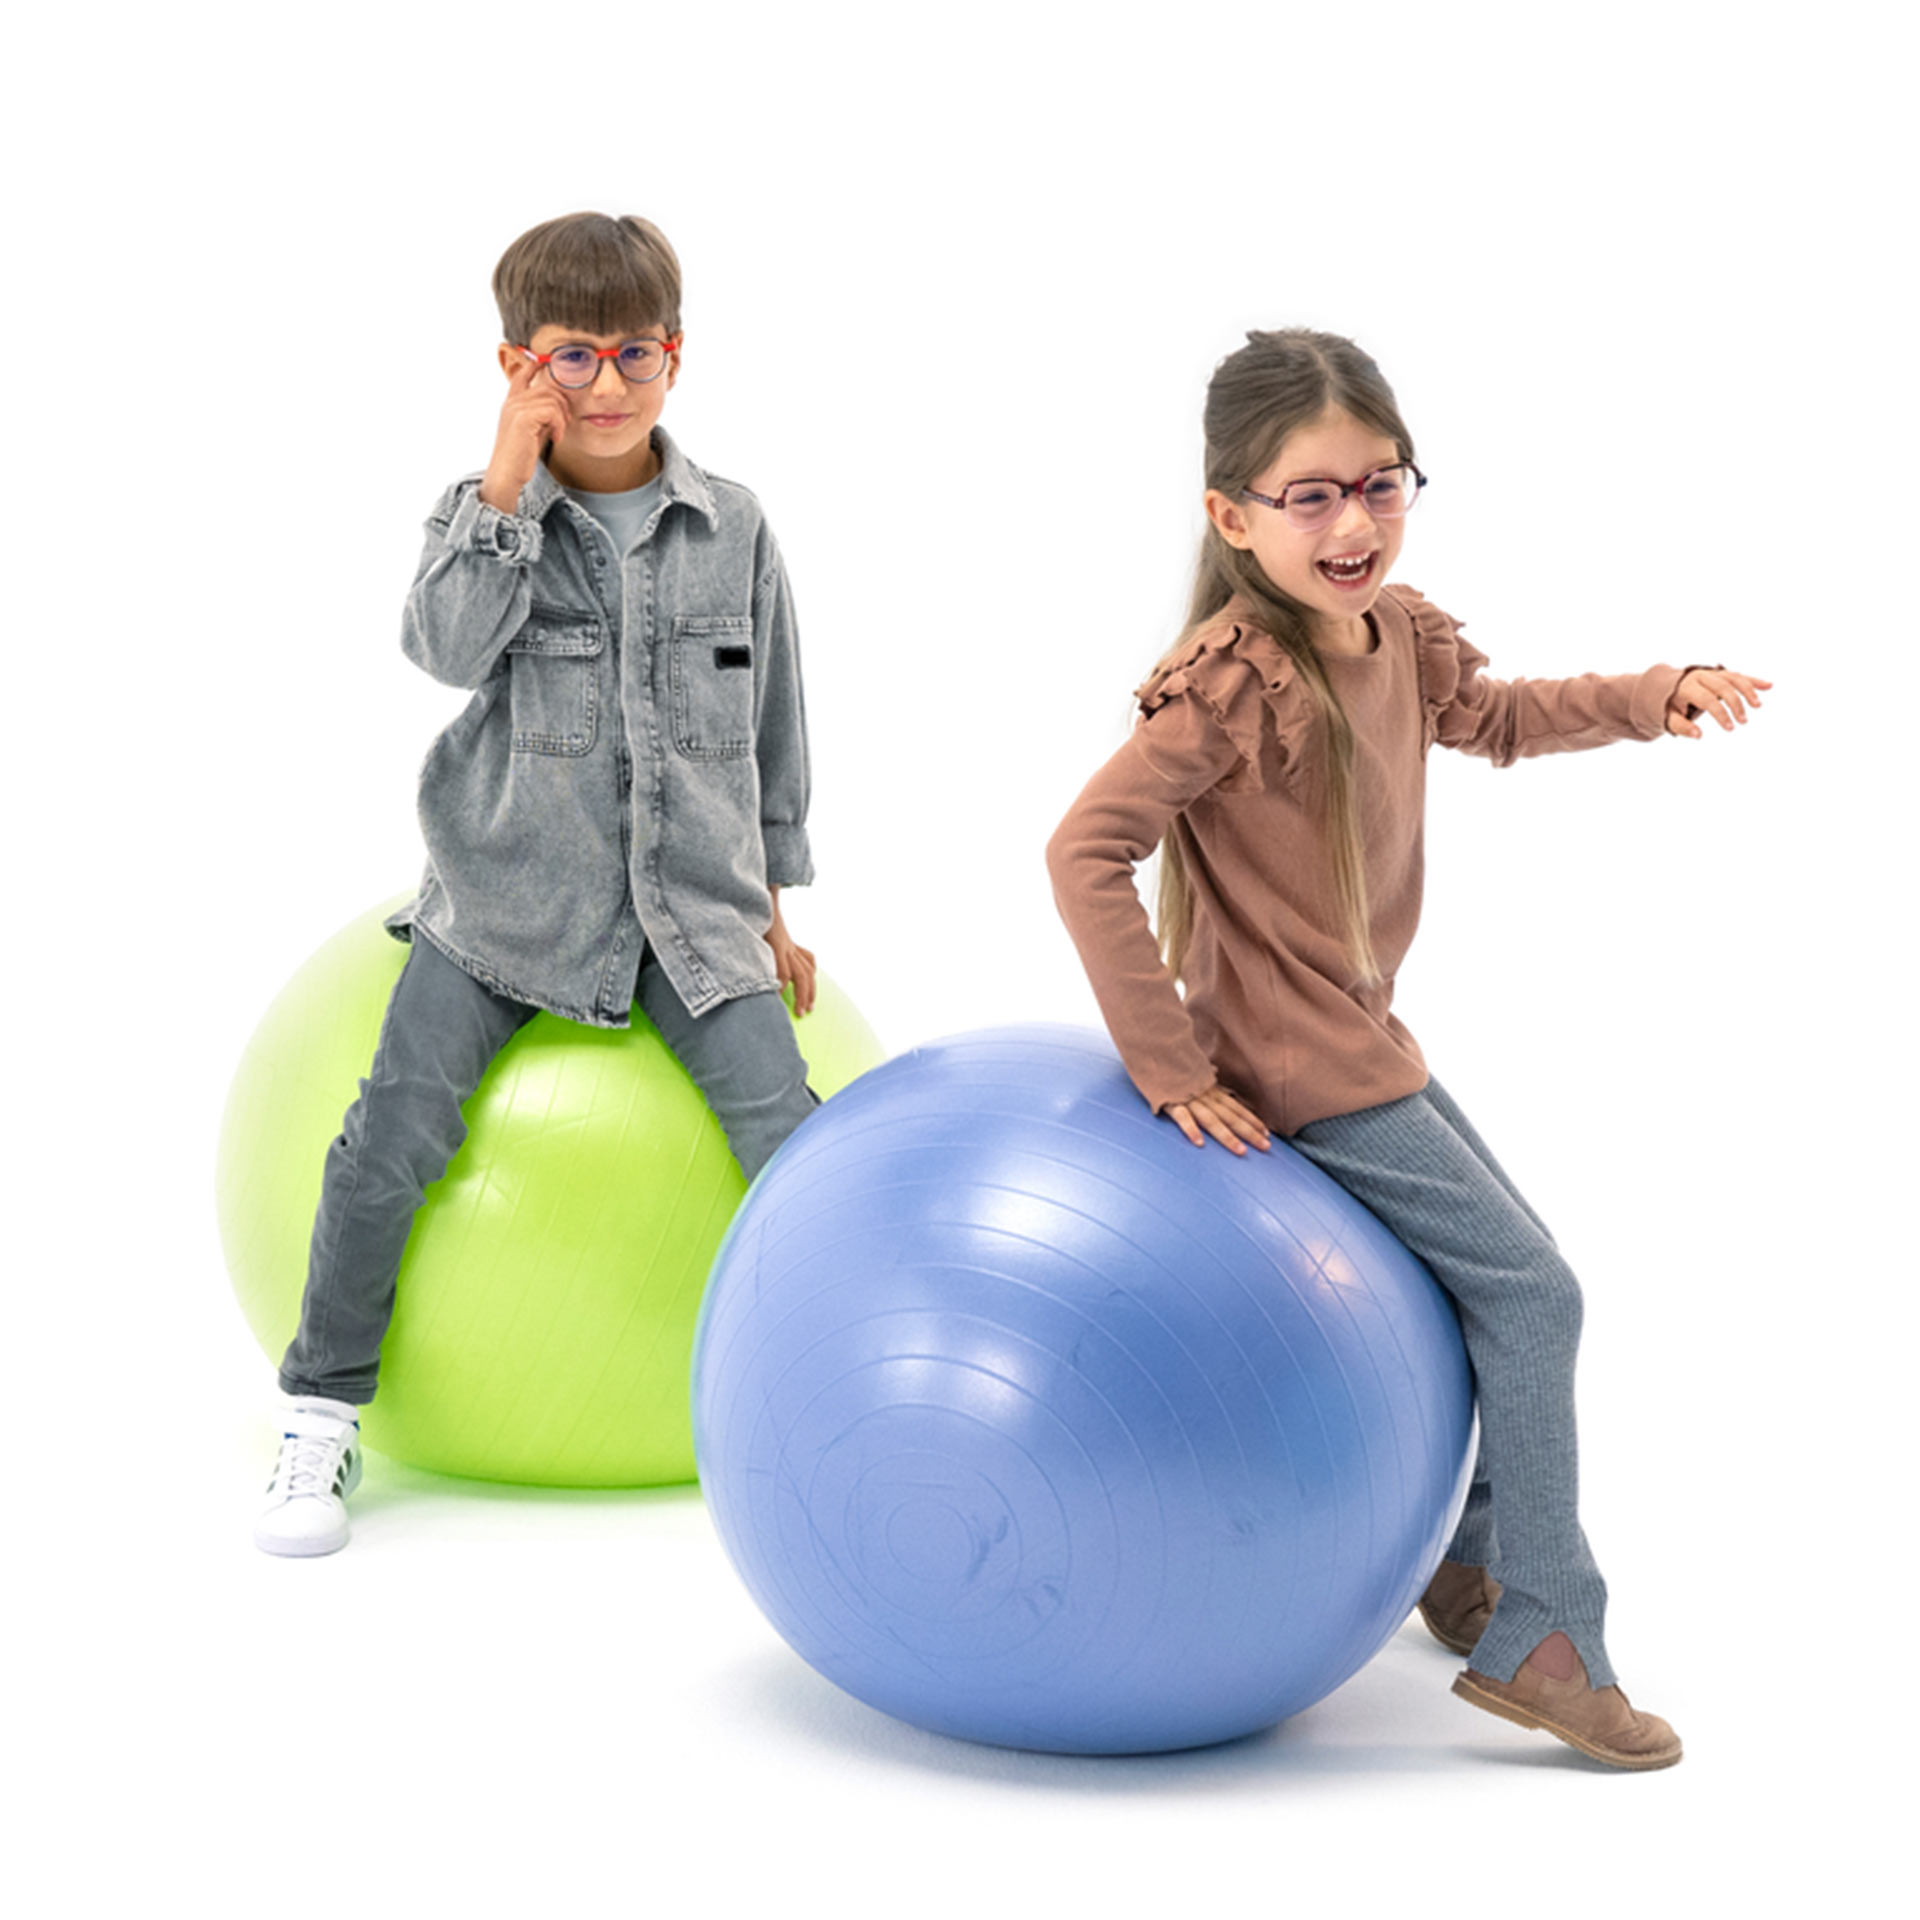 Un niño y una niña, ambos con gafas, rebotan divertidamente sobre pelotas de gimnasia.